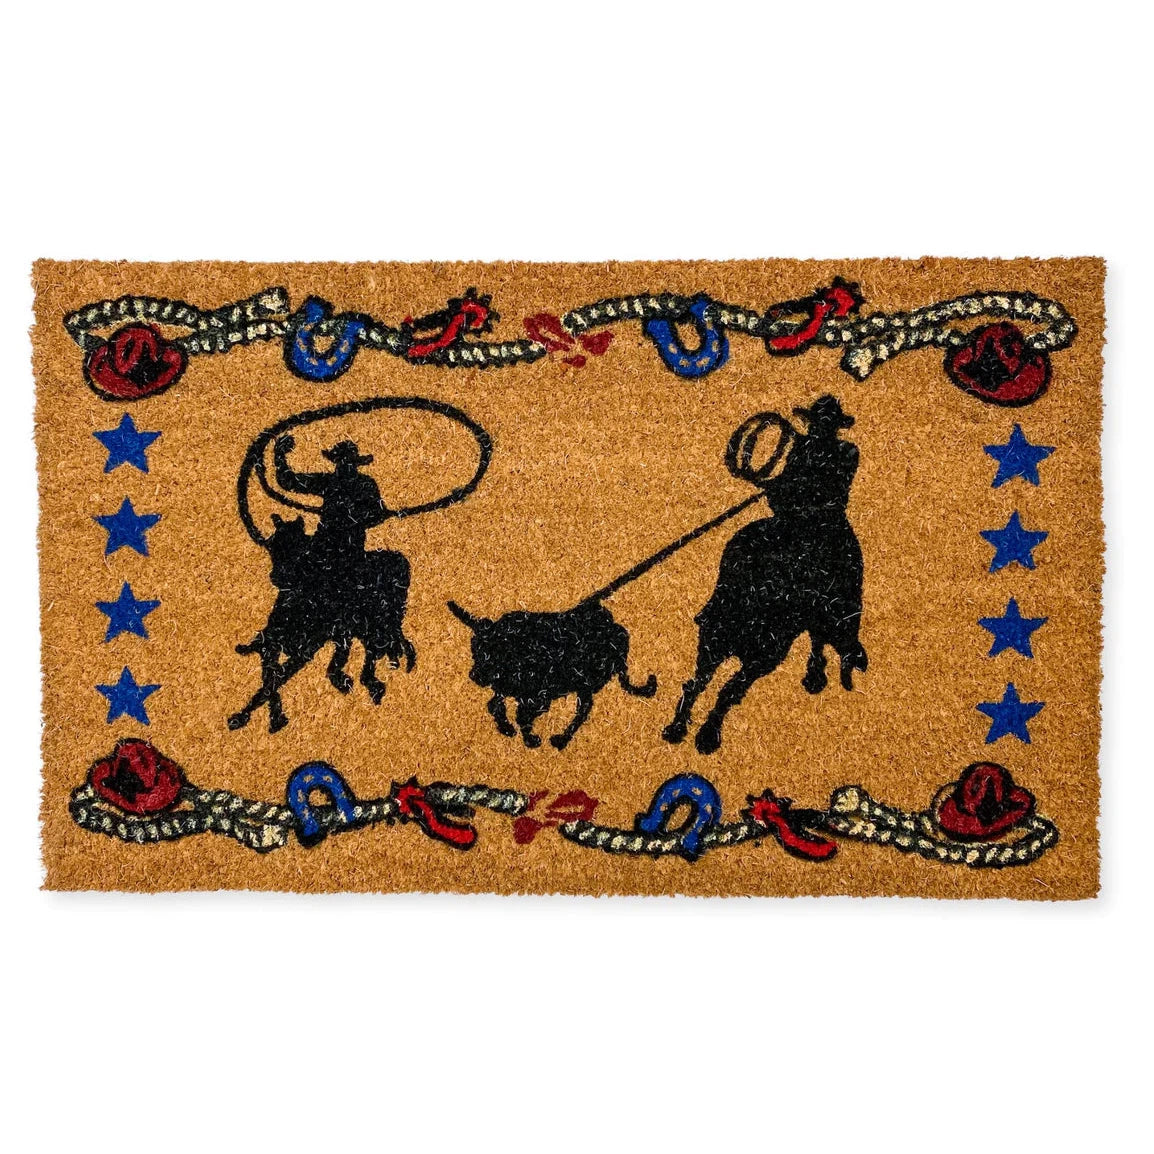 El Paso Outdoor Coir Mat - Roping Cowboys